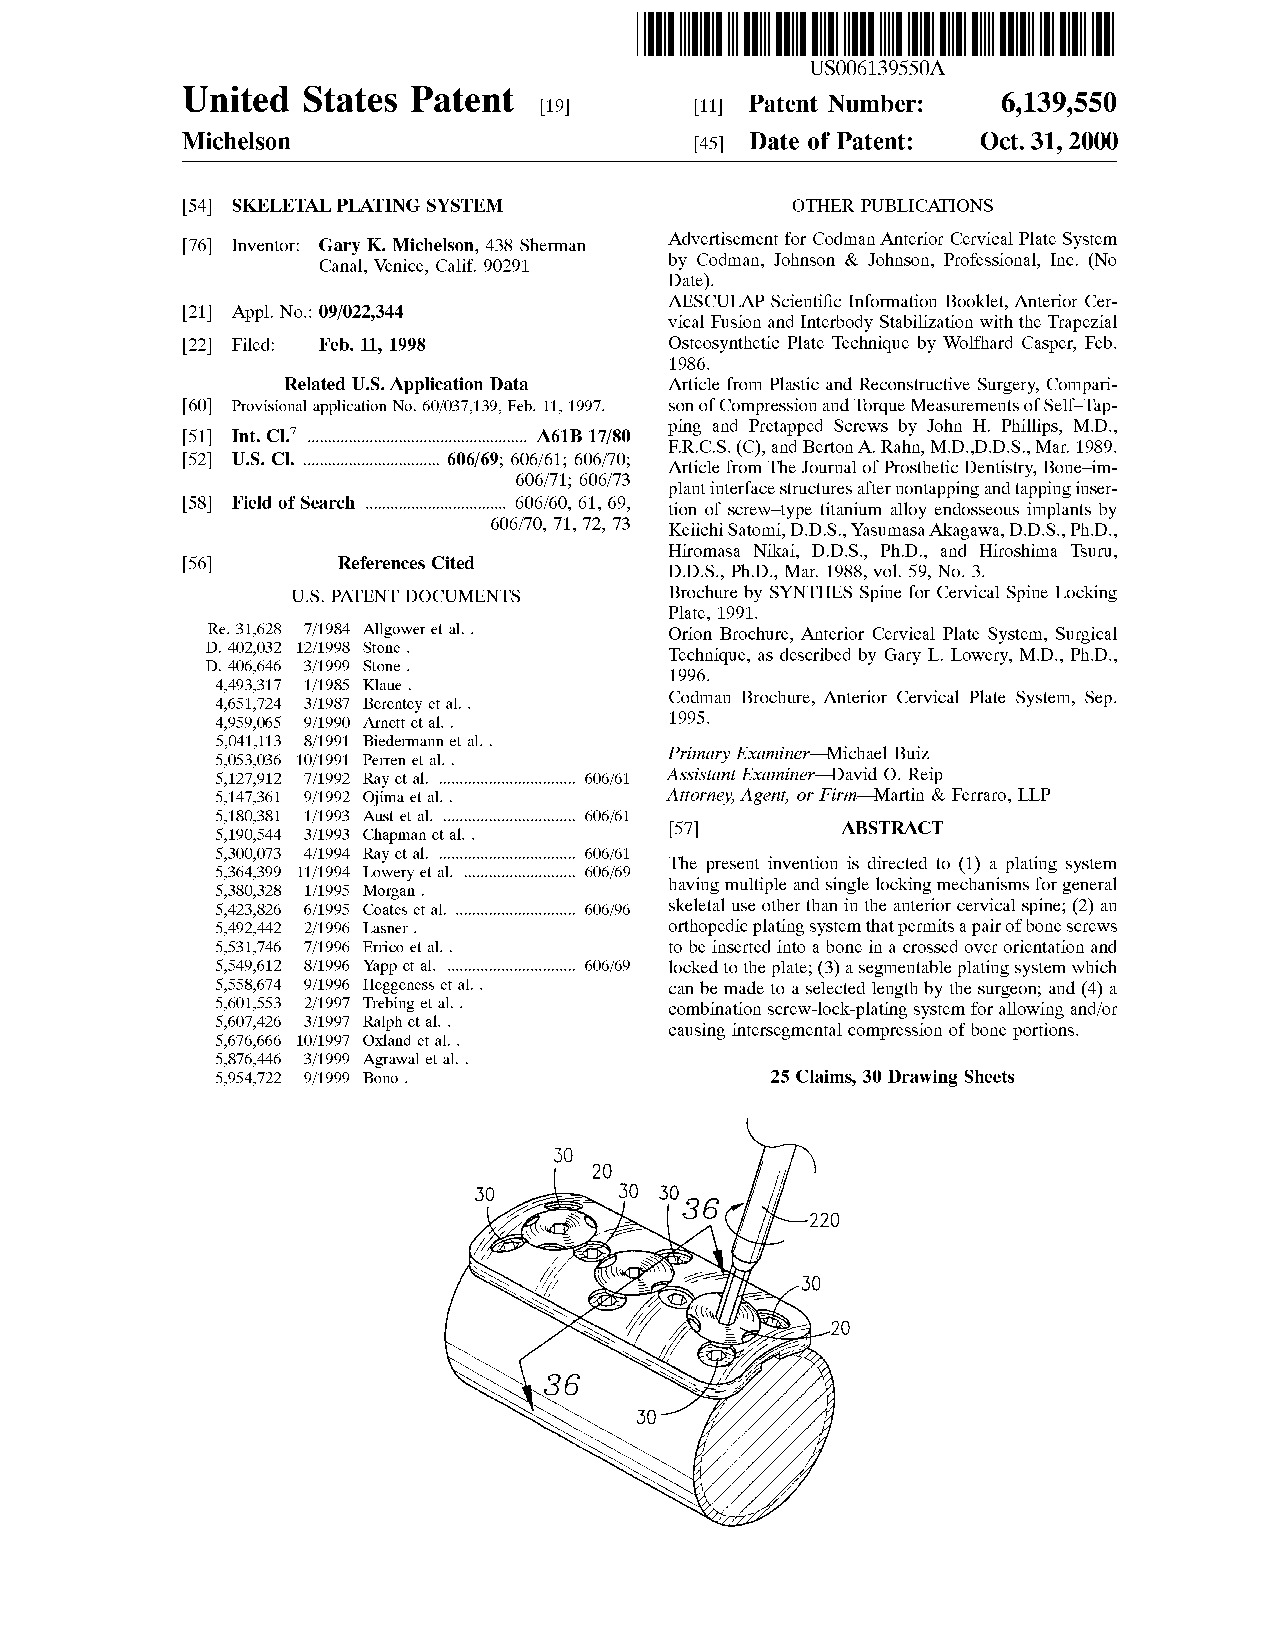 Skeletal plating system - Patent 6,139,550